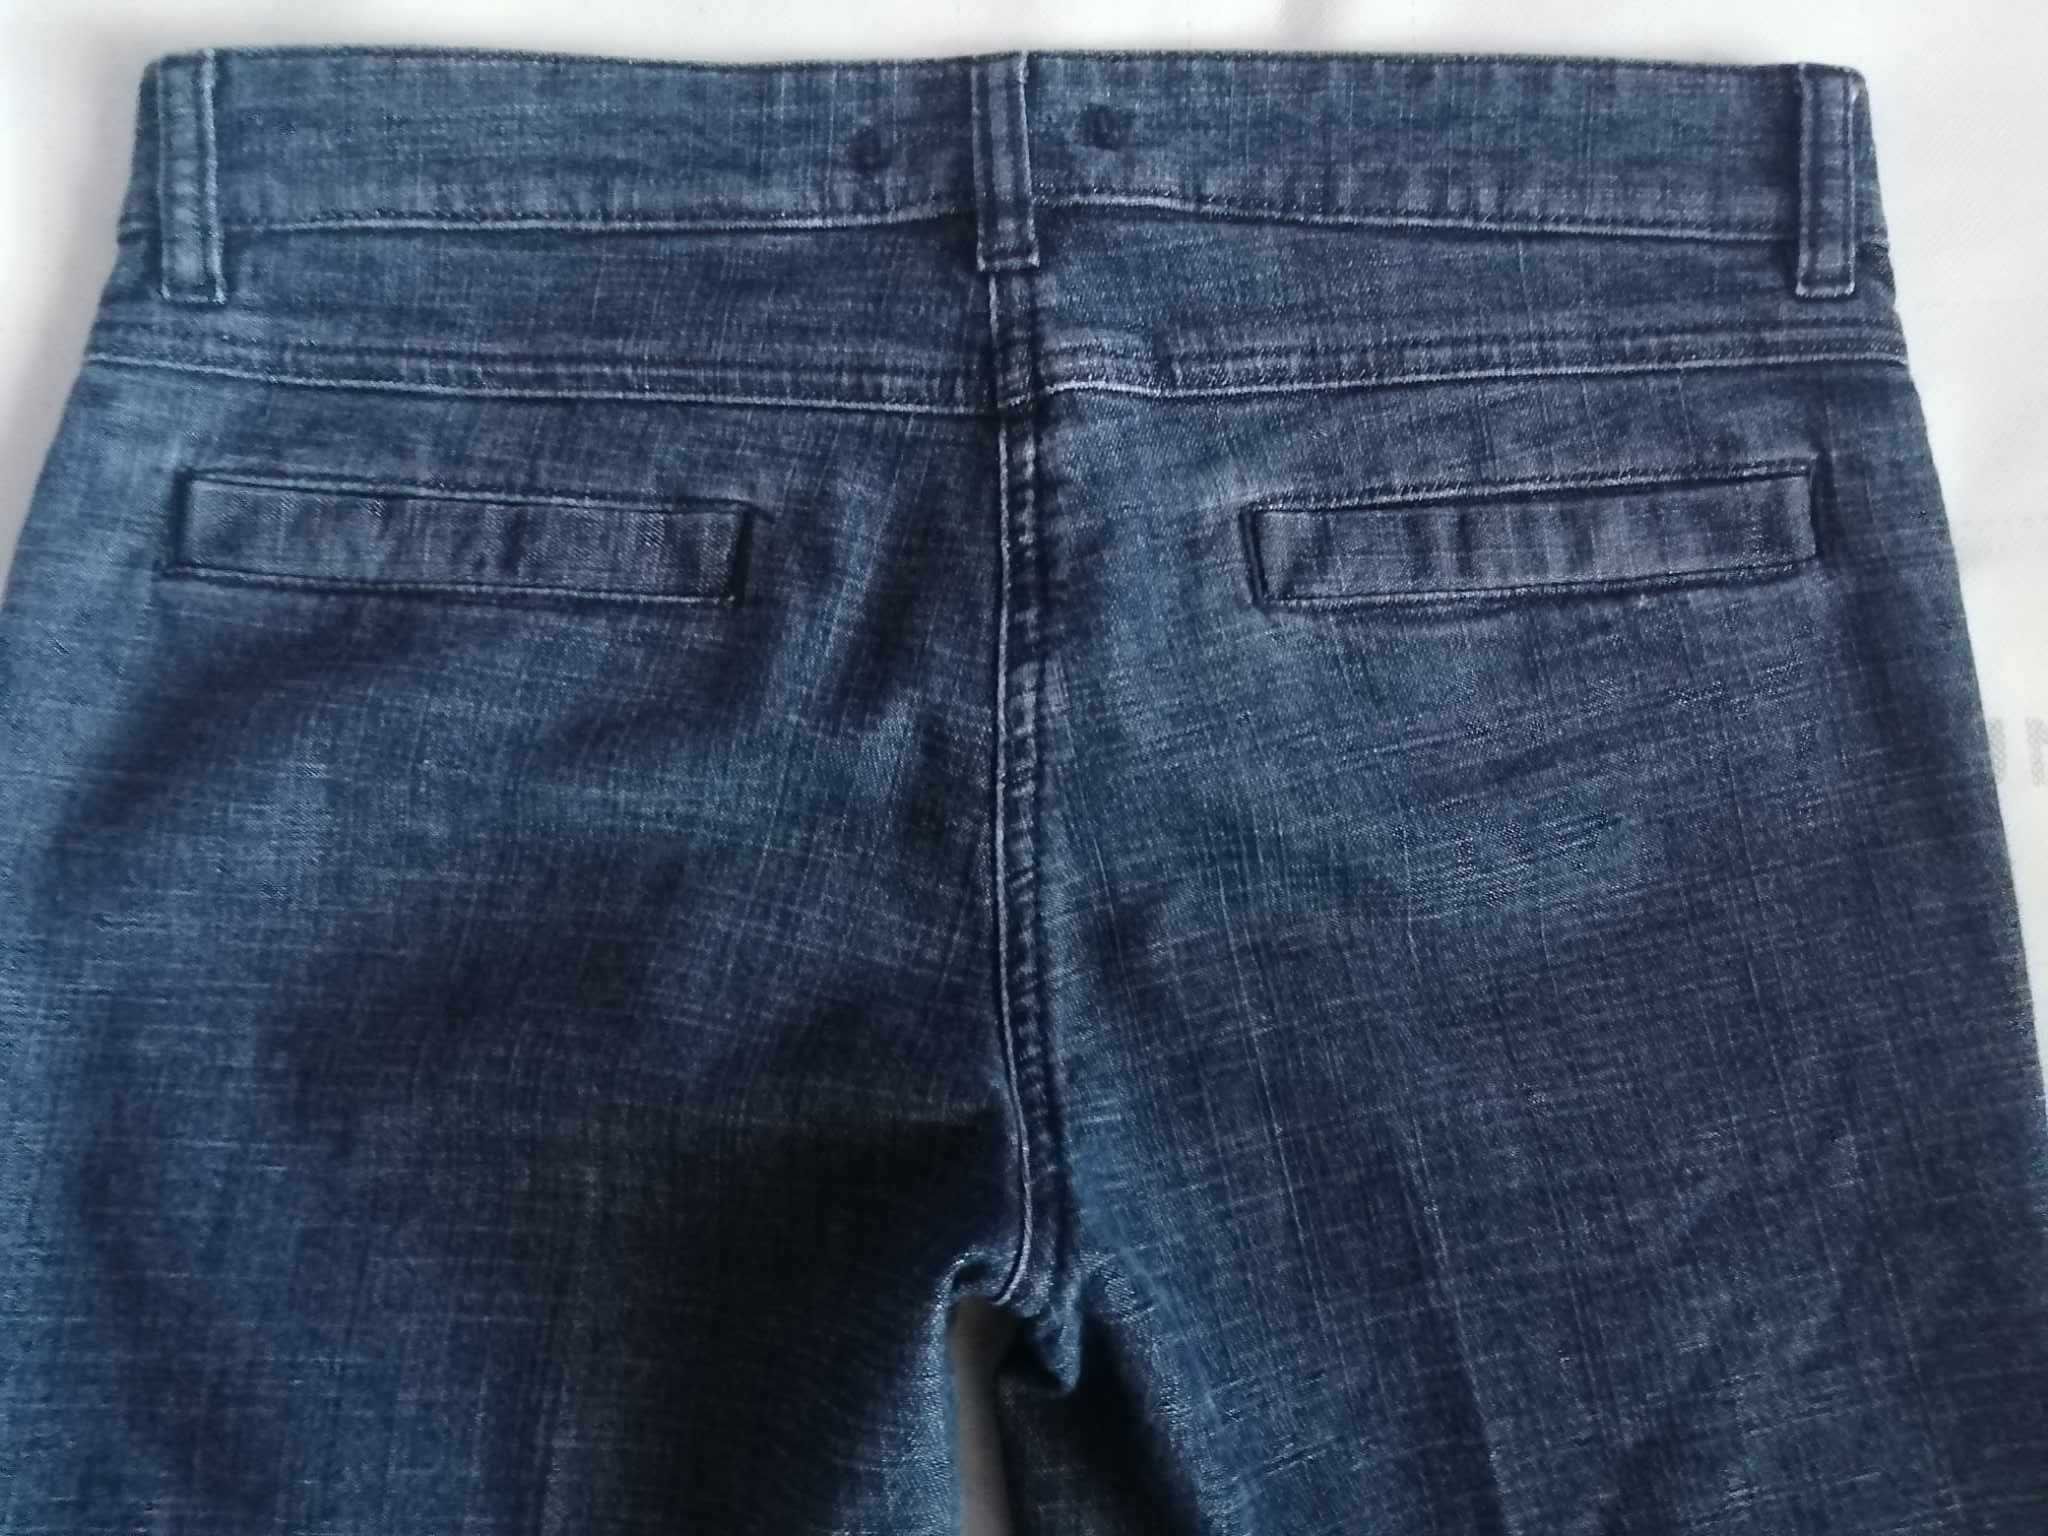 NEXT Petite Jeans Spodnie 3/4 Damskie Eur 34 Bawełna jak nowe